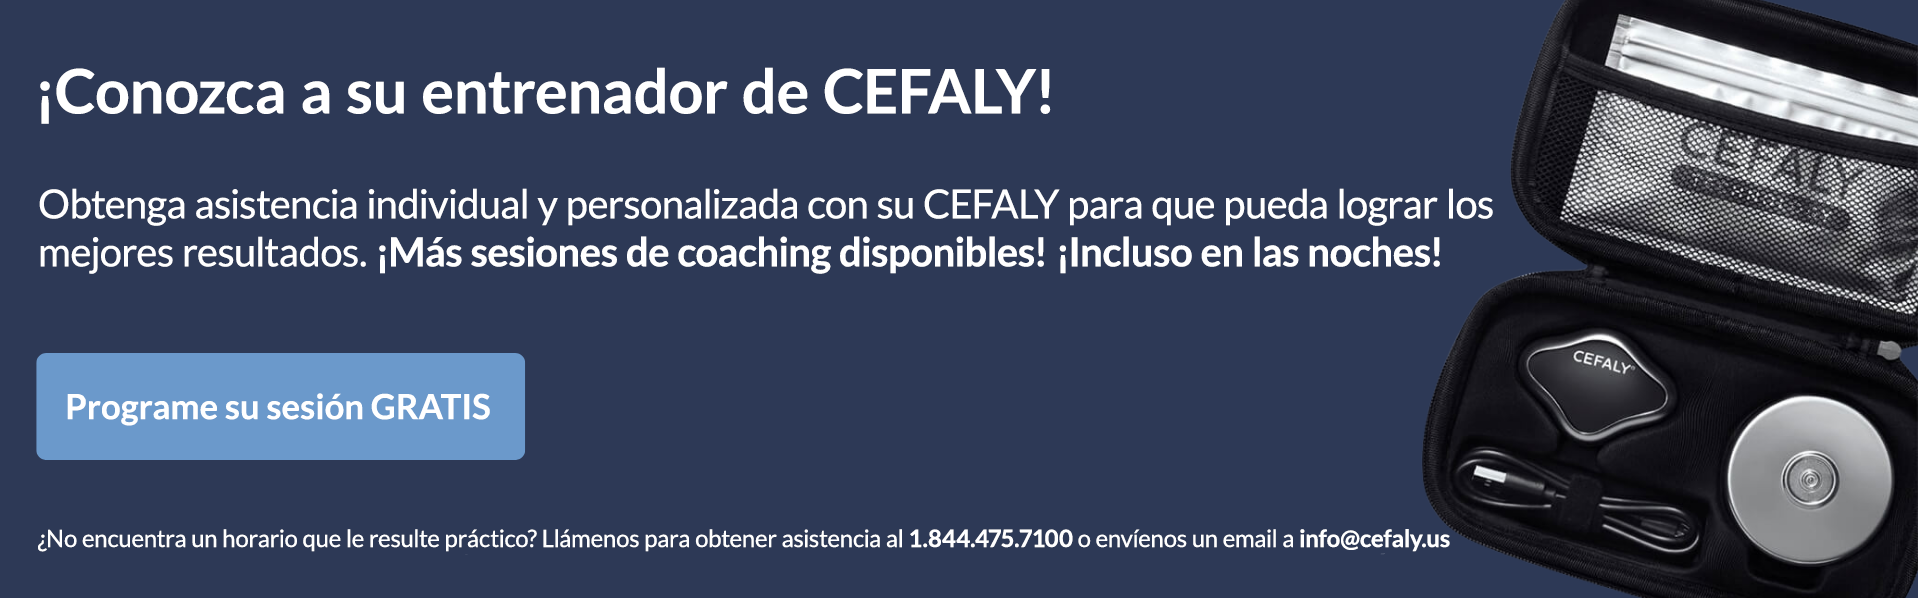 Imagen de "Conozca a su entrenador de CEFALY" y enlace al calendario para programar un horario con el entrenador